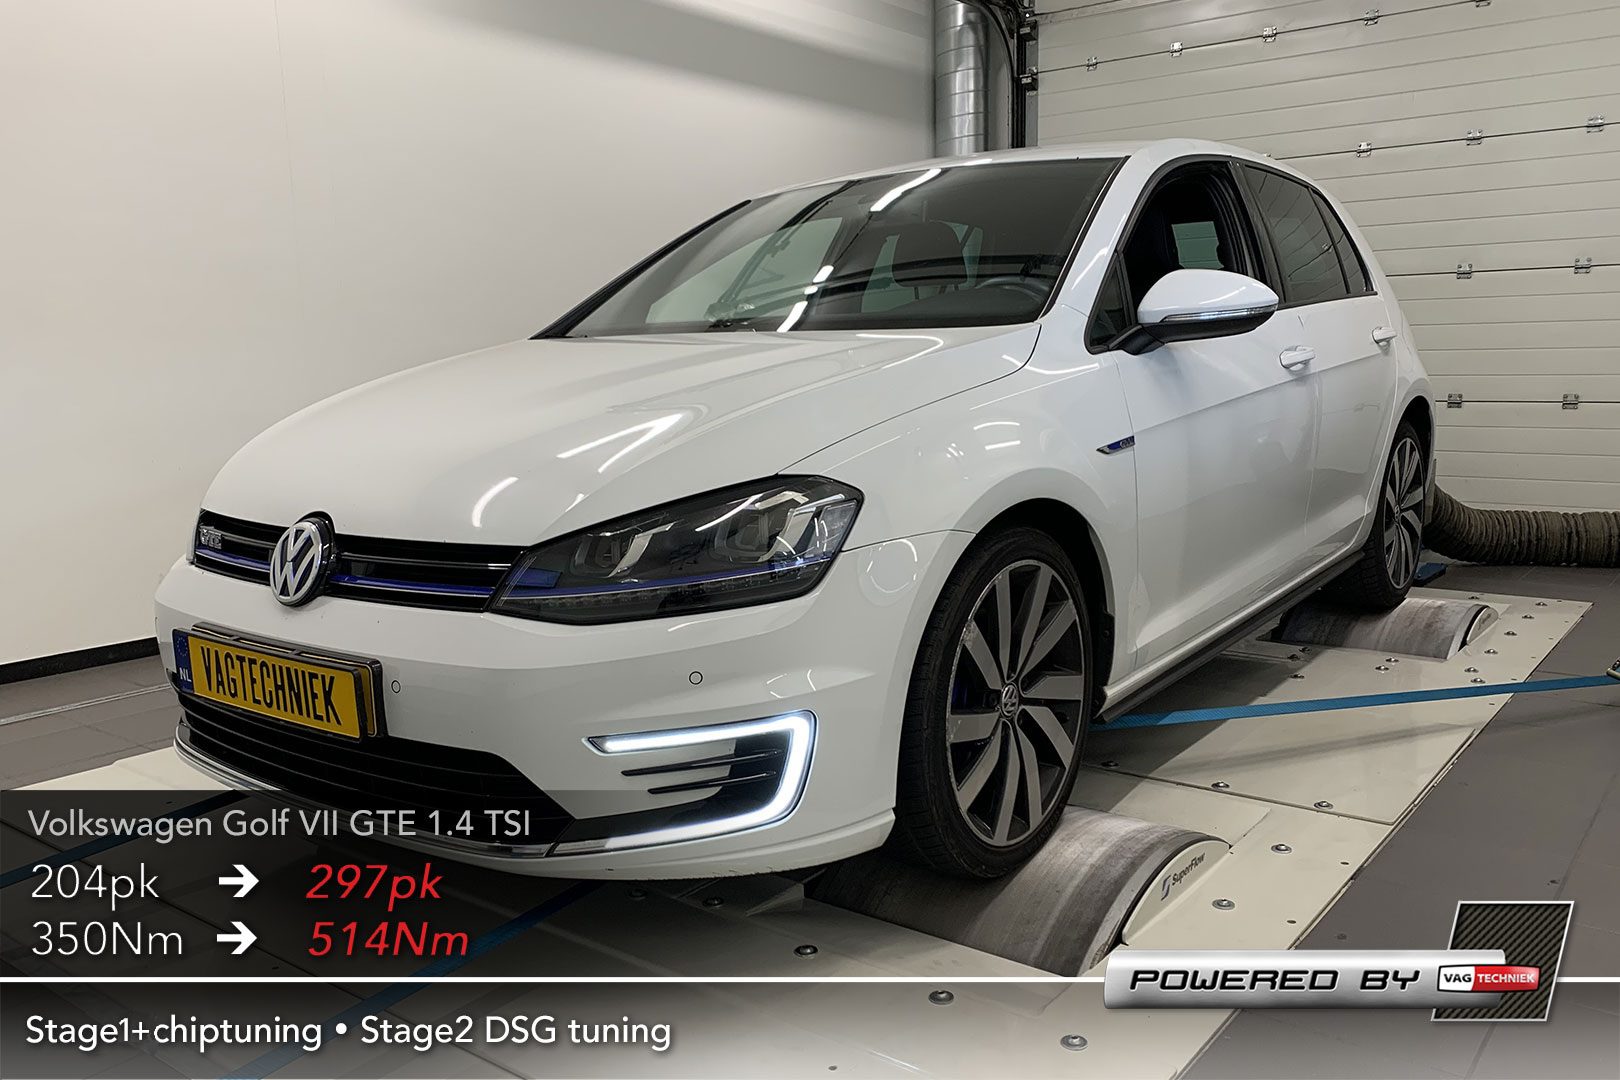 tekort Persoon belast met sportgame Nationaal volkslied Volkswagen Golf 7 1.4 TSI GTE Chiptuning? | Vagtechniek